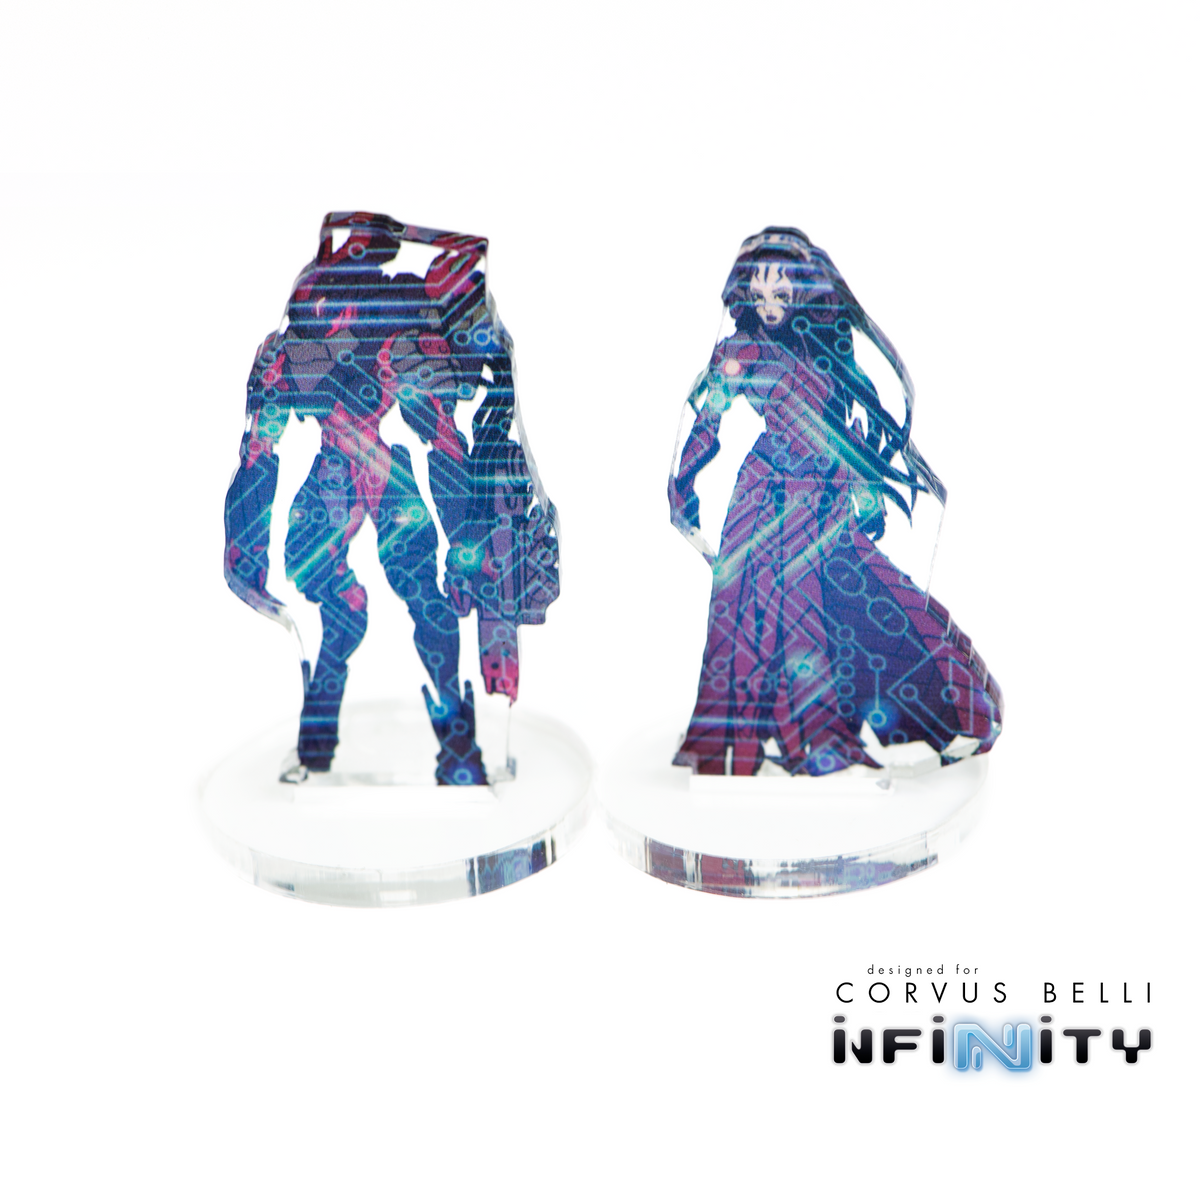 Infinity 3D Markers: Bit & Kiss (2x 25mm Cybermask)